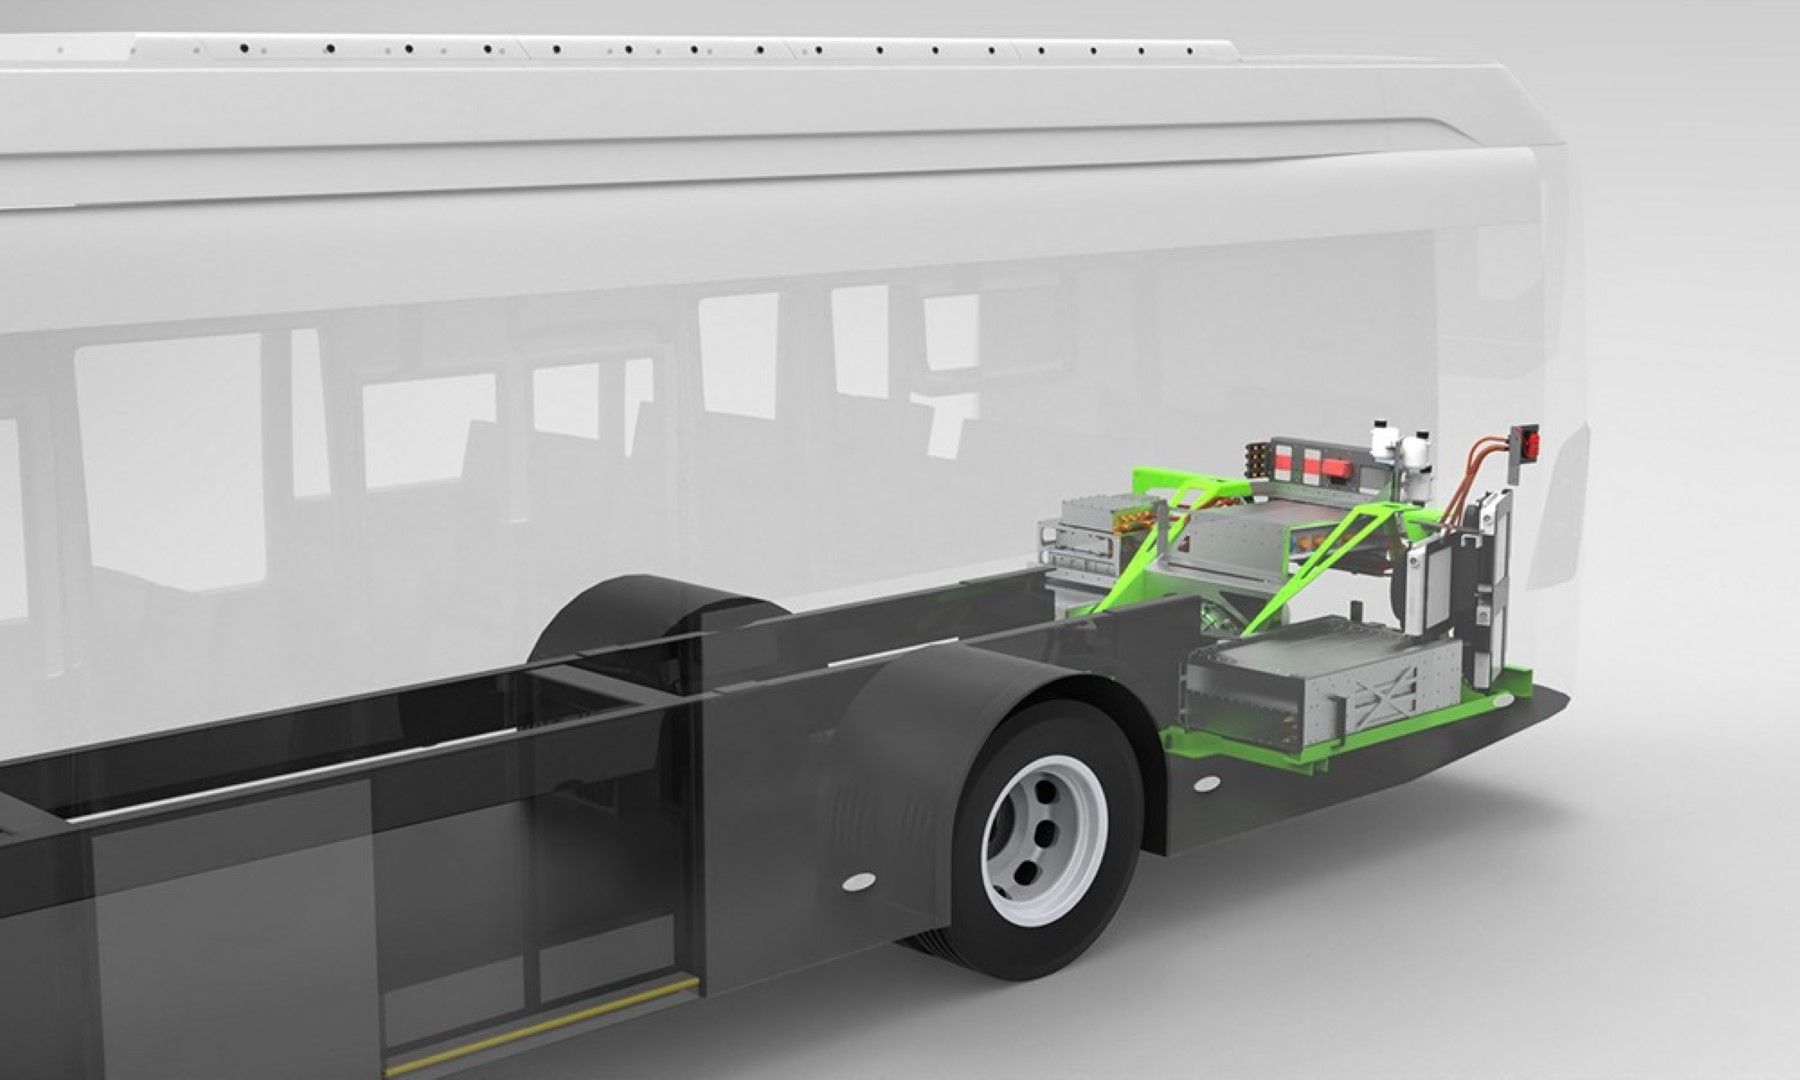 Η Kleanbus μετατρέπει τα diesel λεωφορεία σε ηλεκτρικά